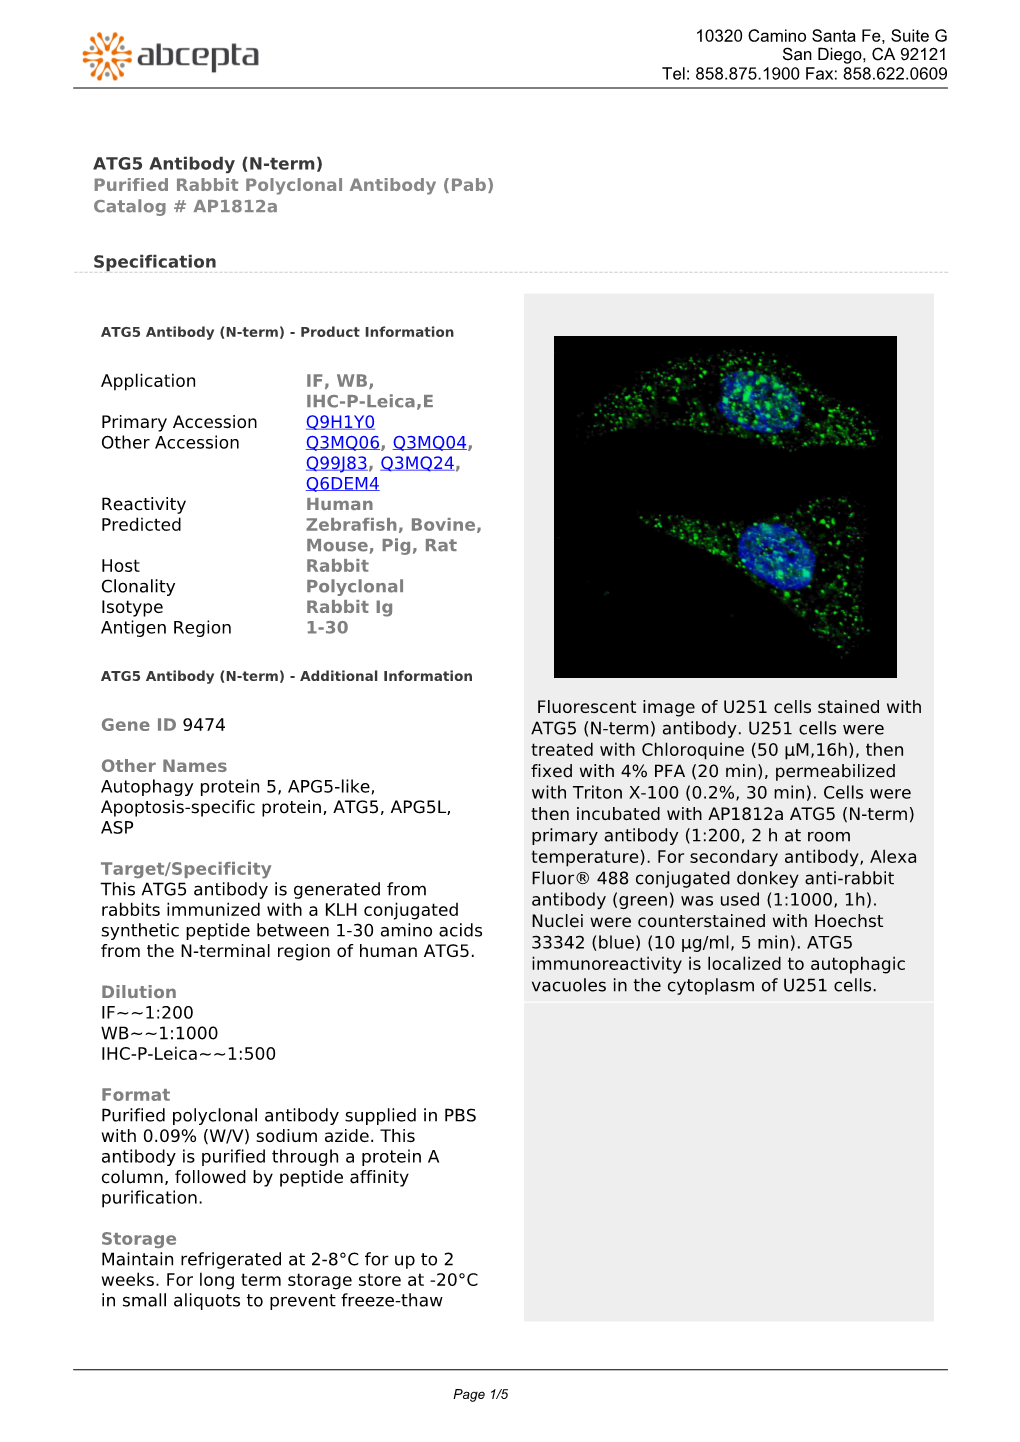 ATG5 Antibody (N-Term) Purified Rabbit Polyclonal Antibody (Pab) Catalog # Ap1812a